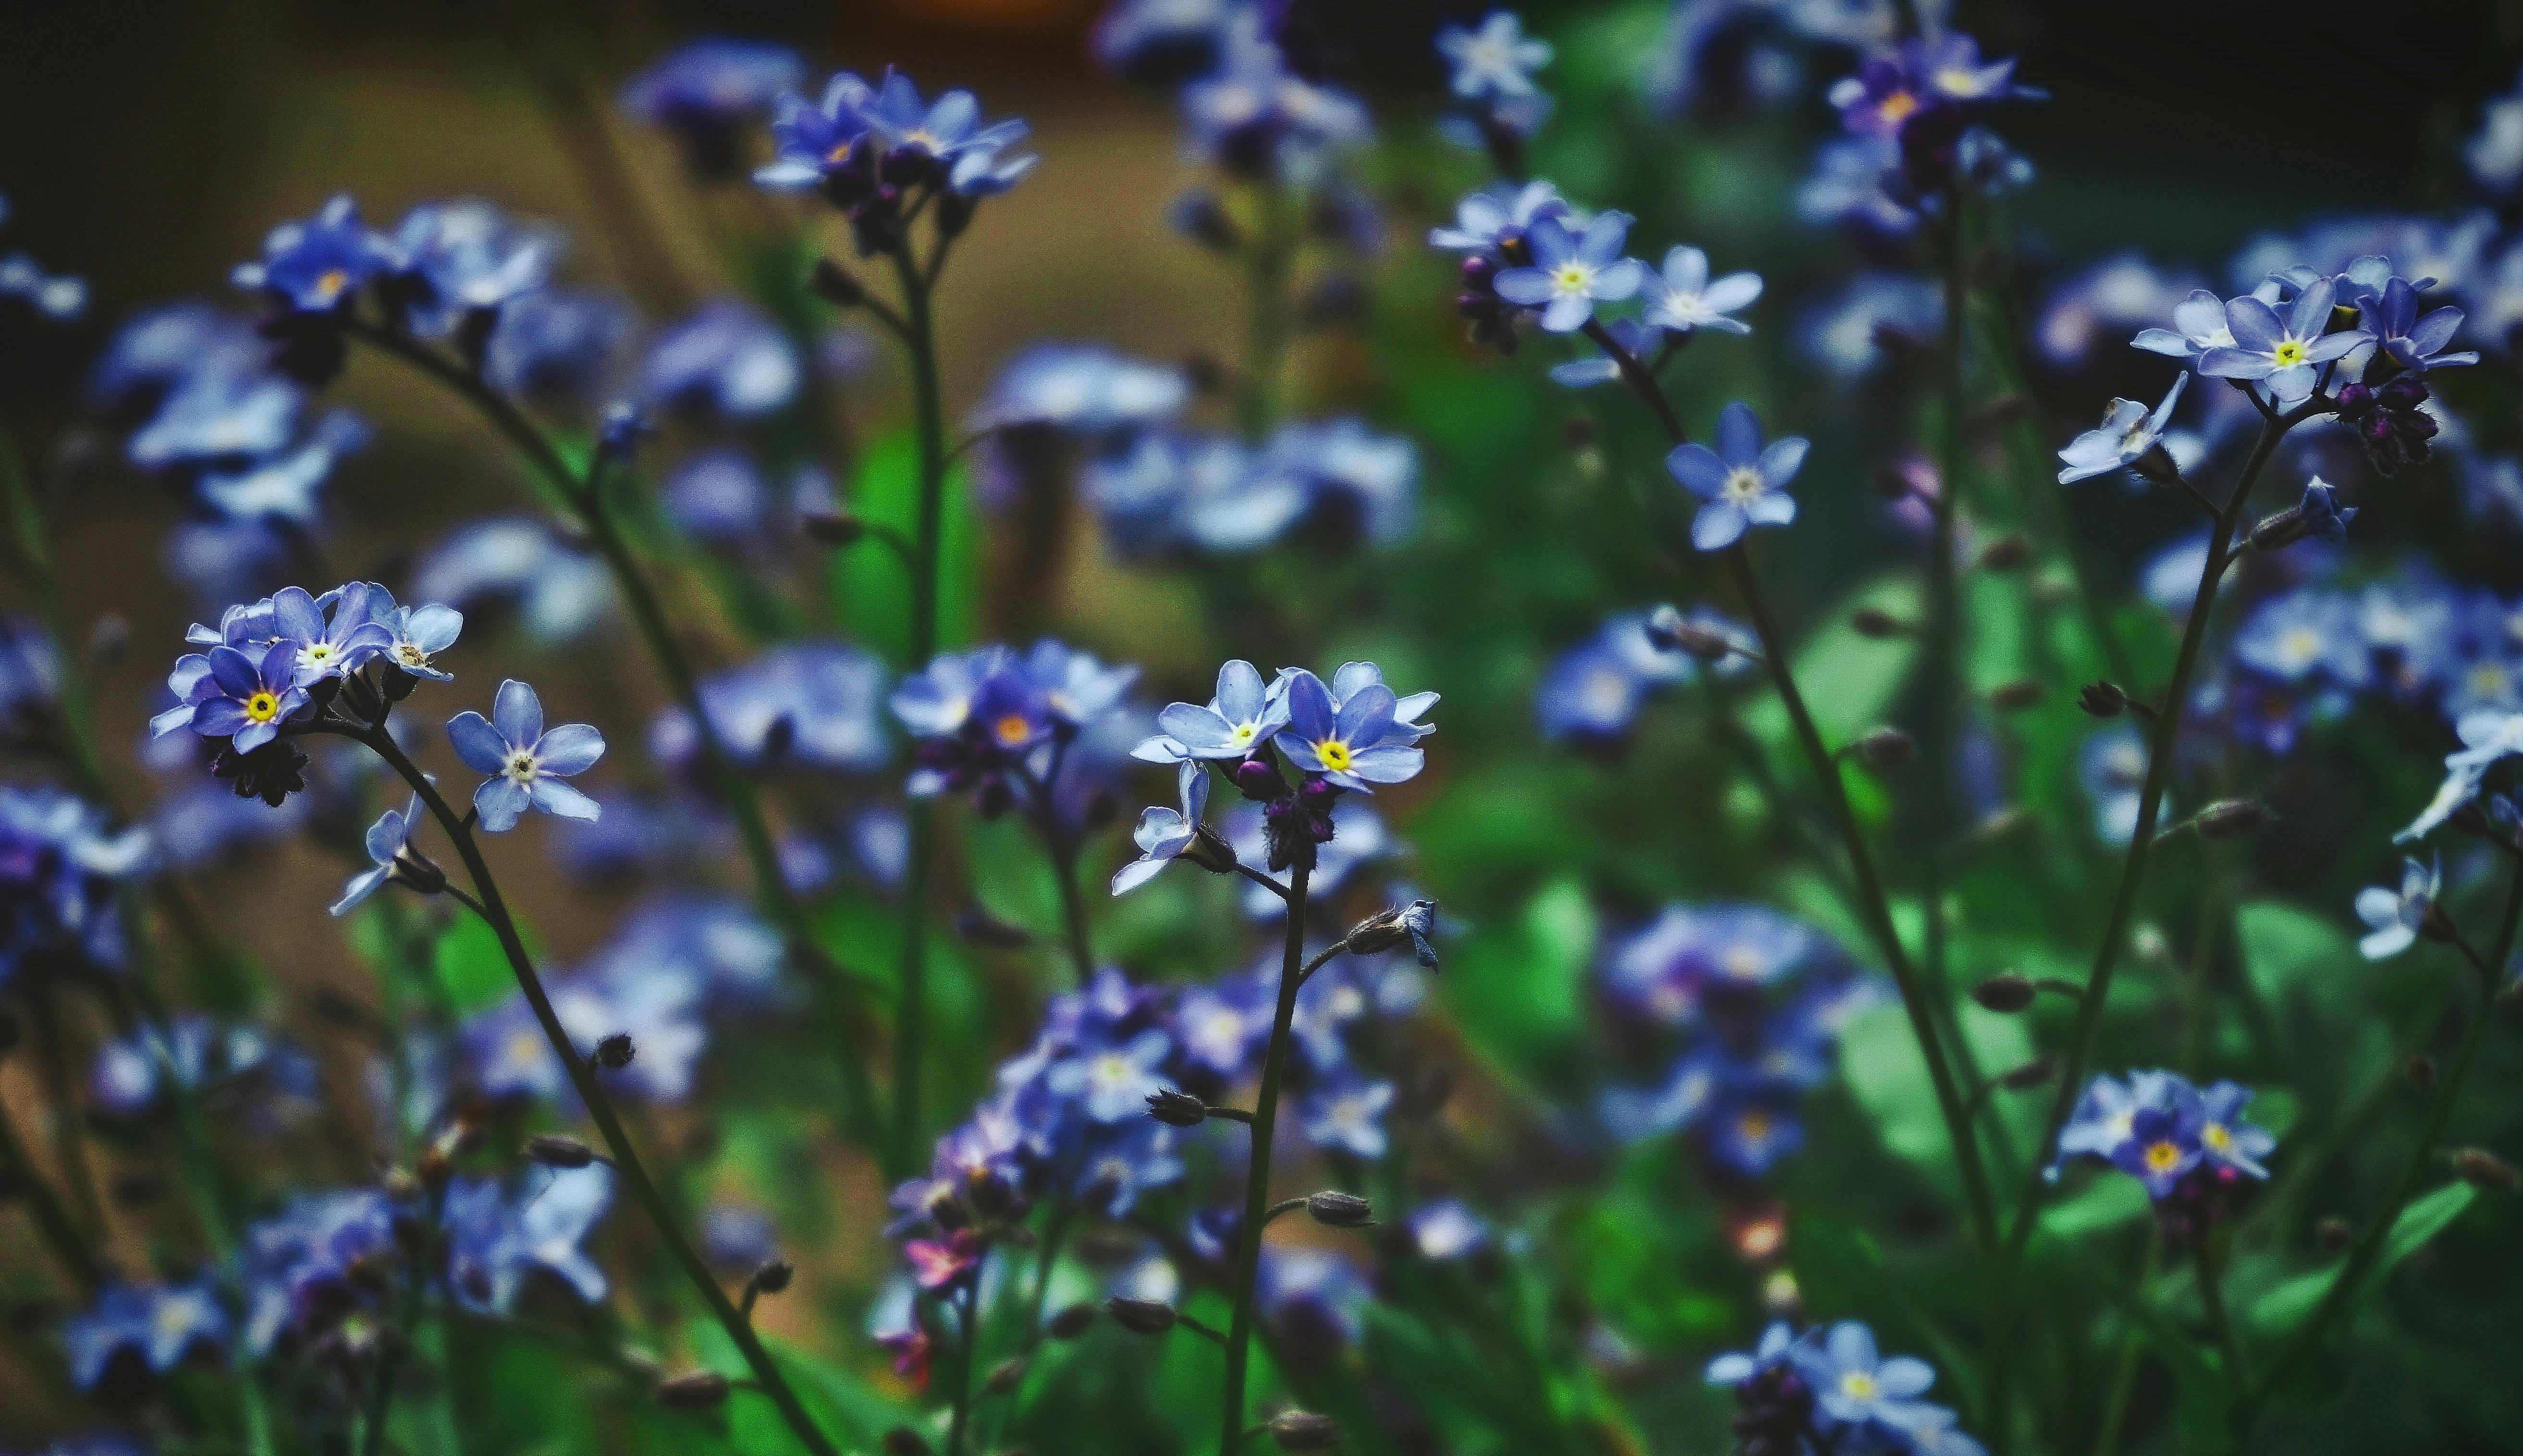 Purple Flowers in Tilt Shift Lens · Free Stock Photo